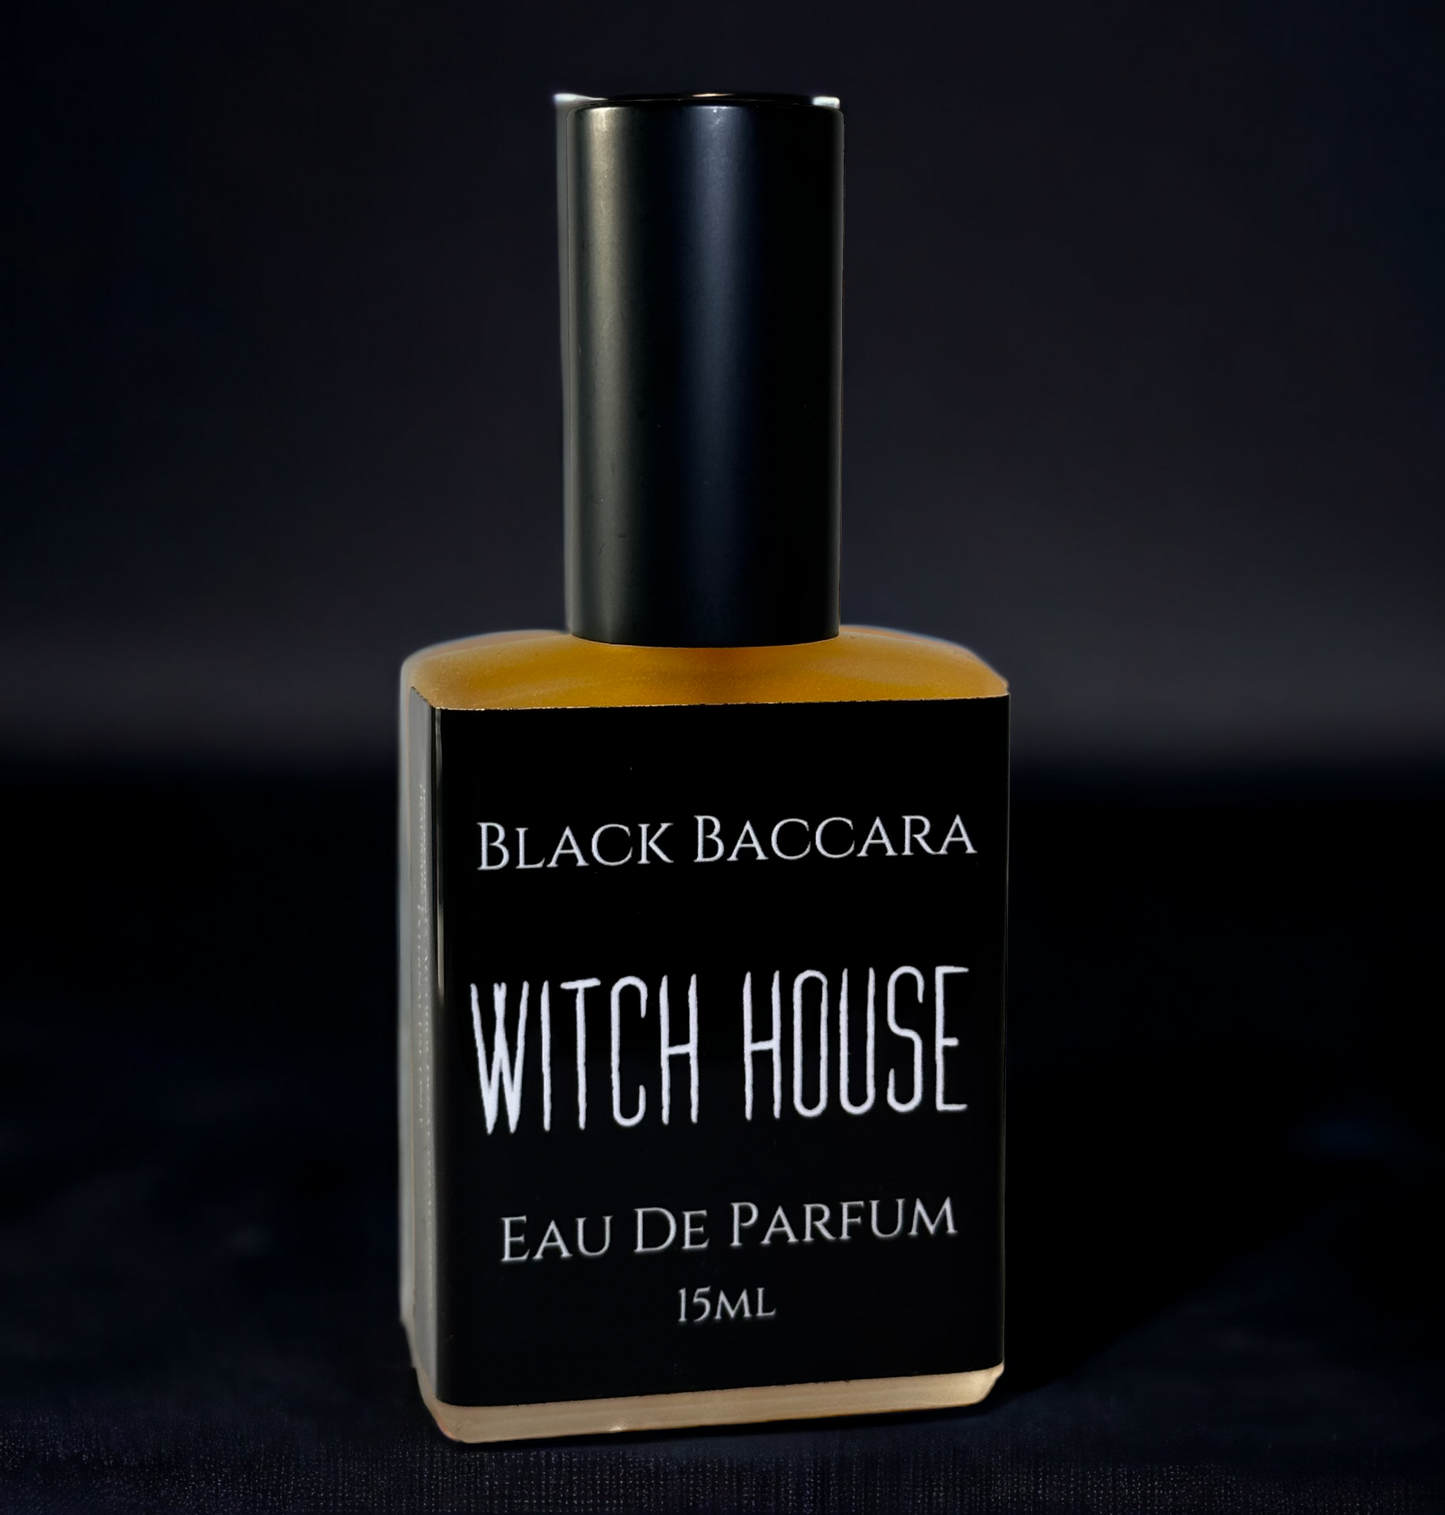 15ml Witch House Eau de Parfum